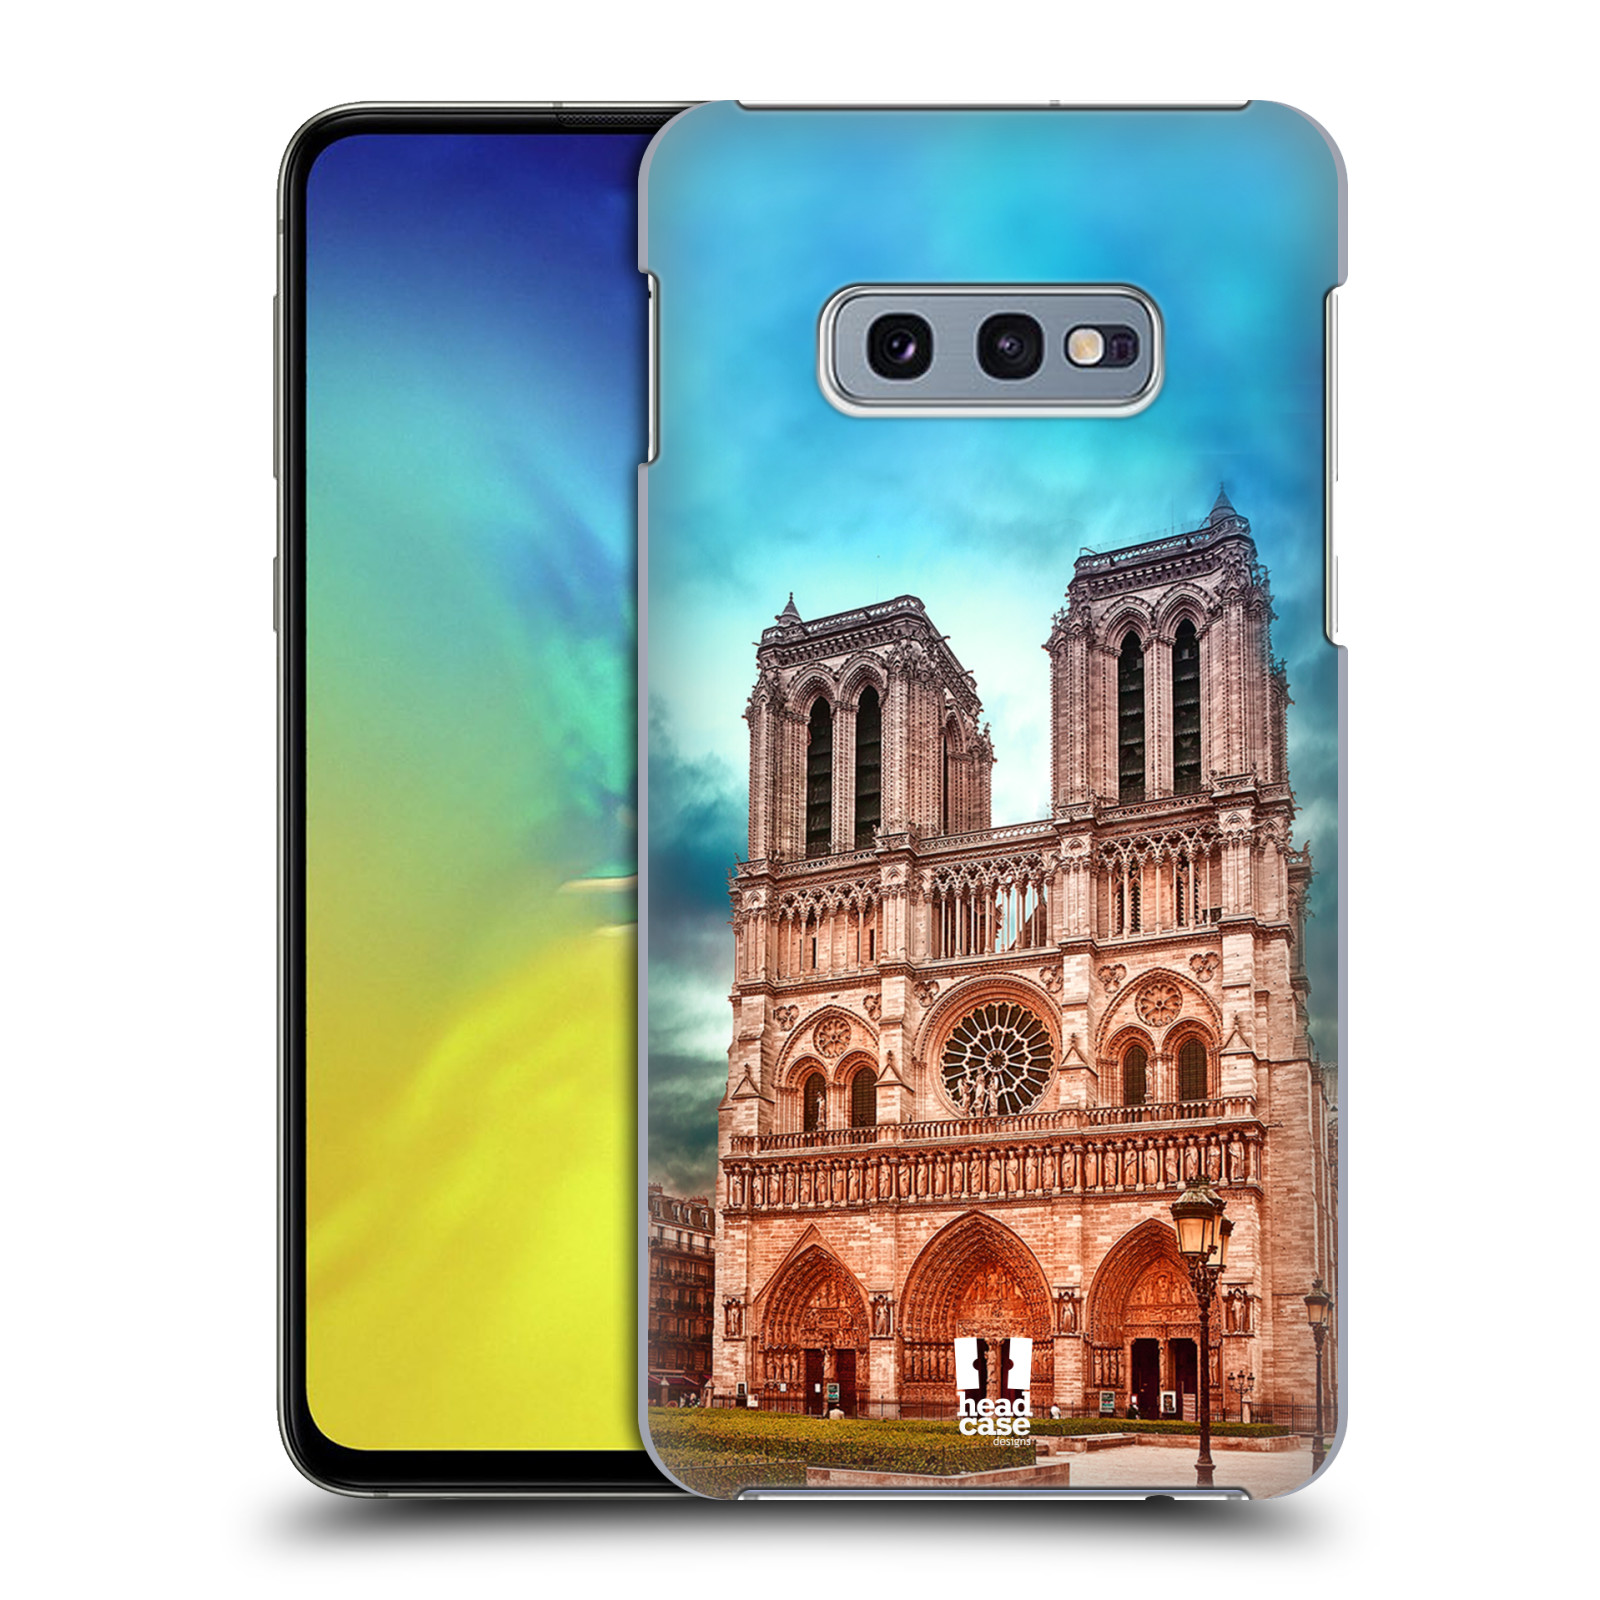 Pouzdro na mobil Samsung Galaxy S10e - HEAD CASE - historická místa katedrála Notre Dame